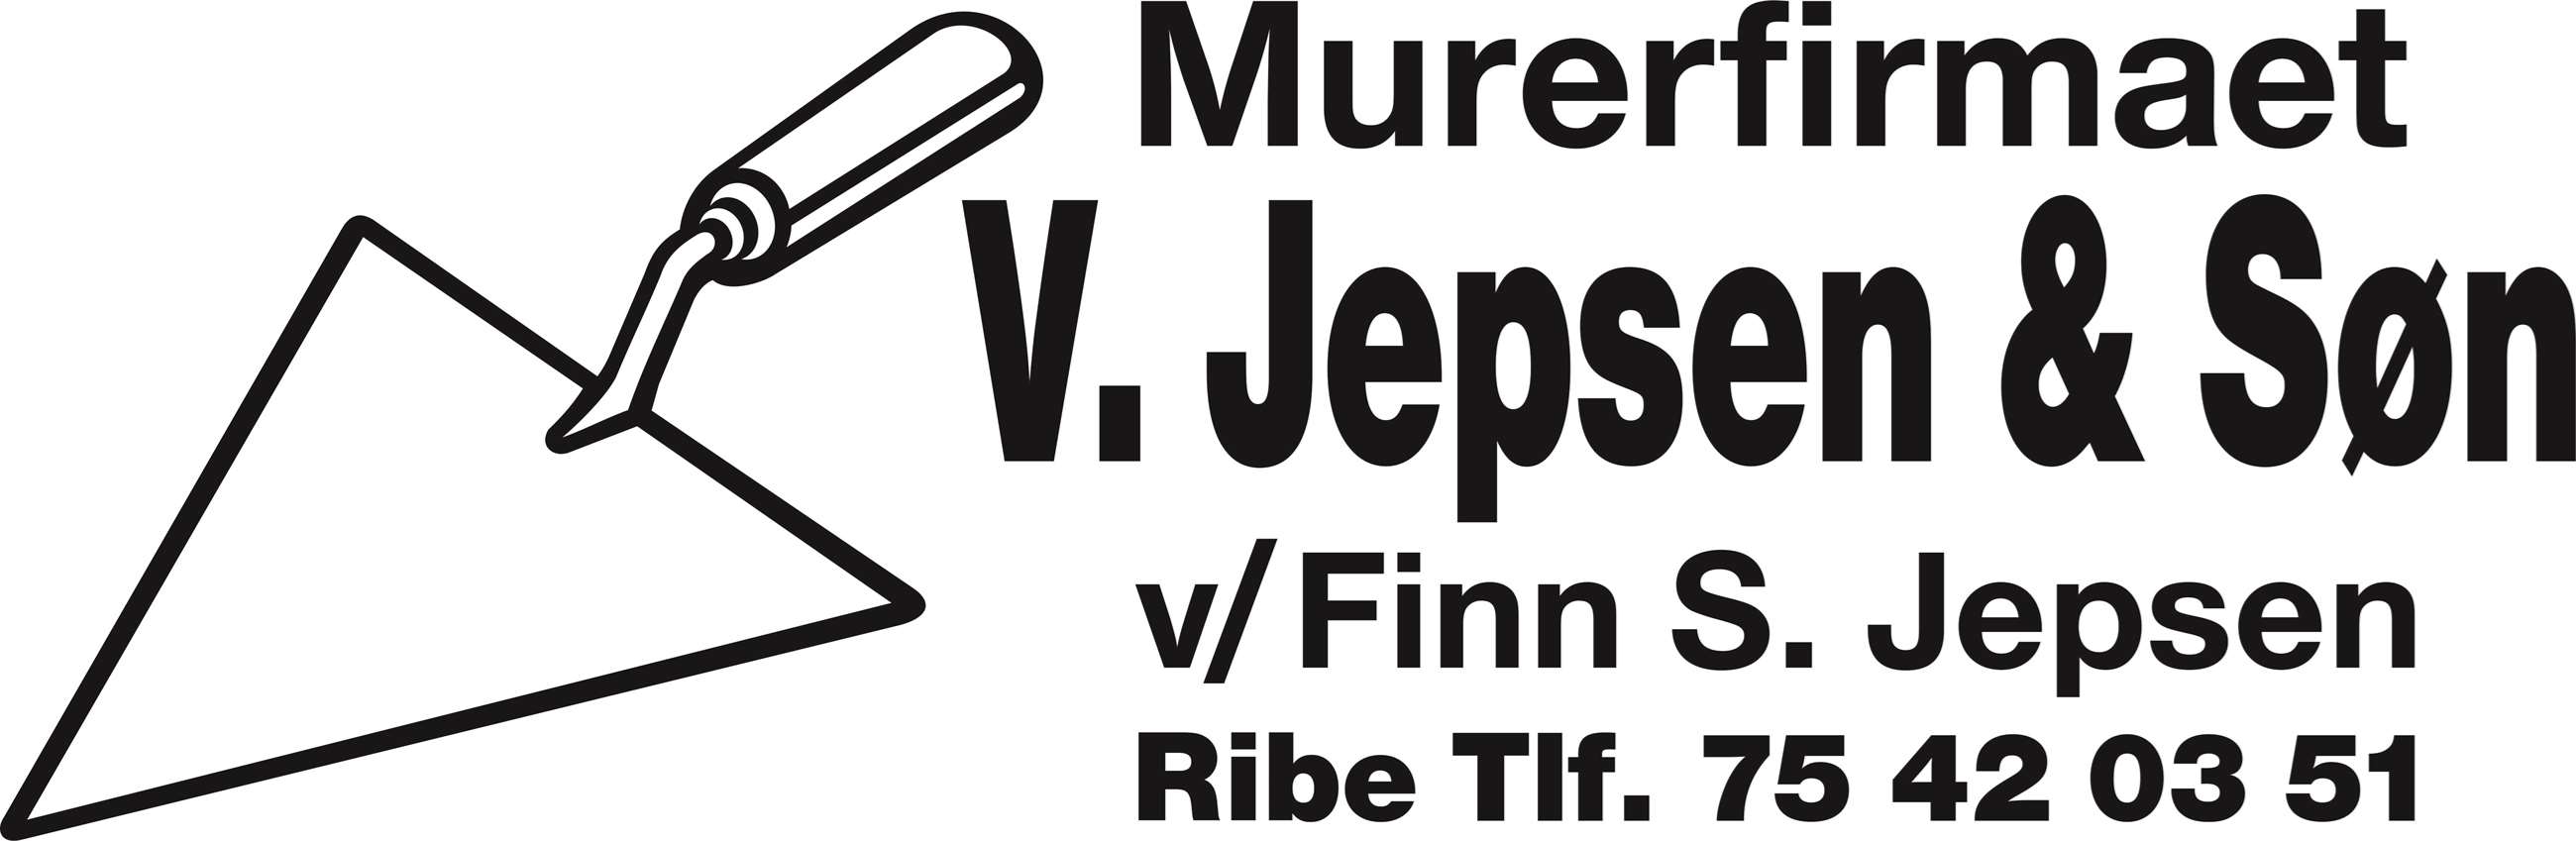 v jepsen & søn logo